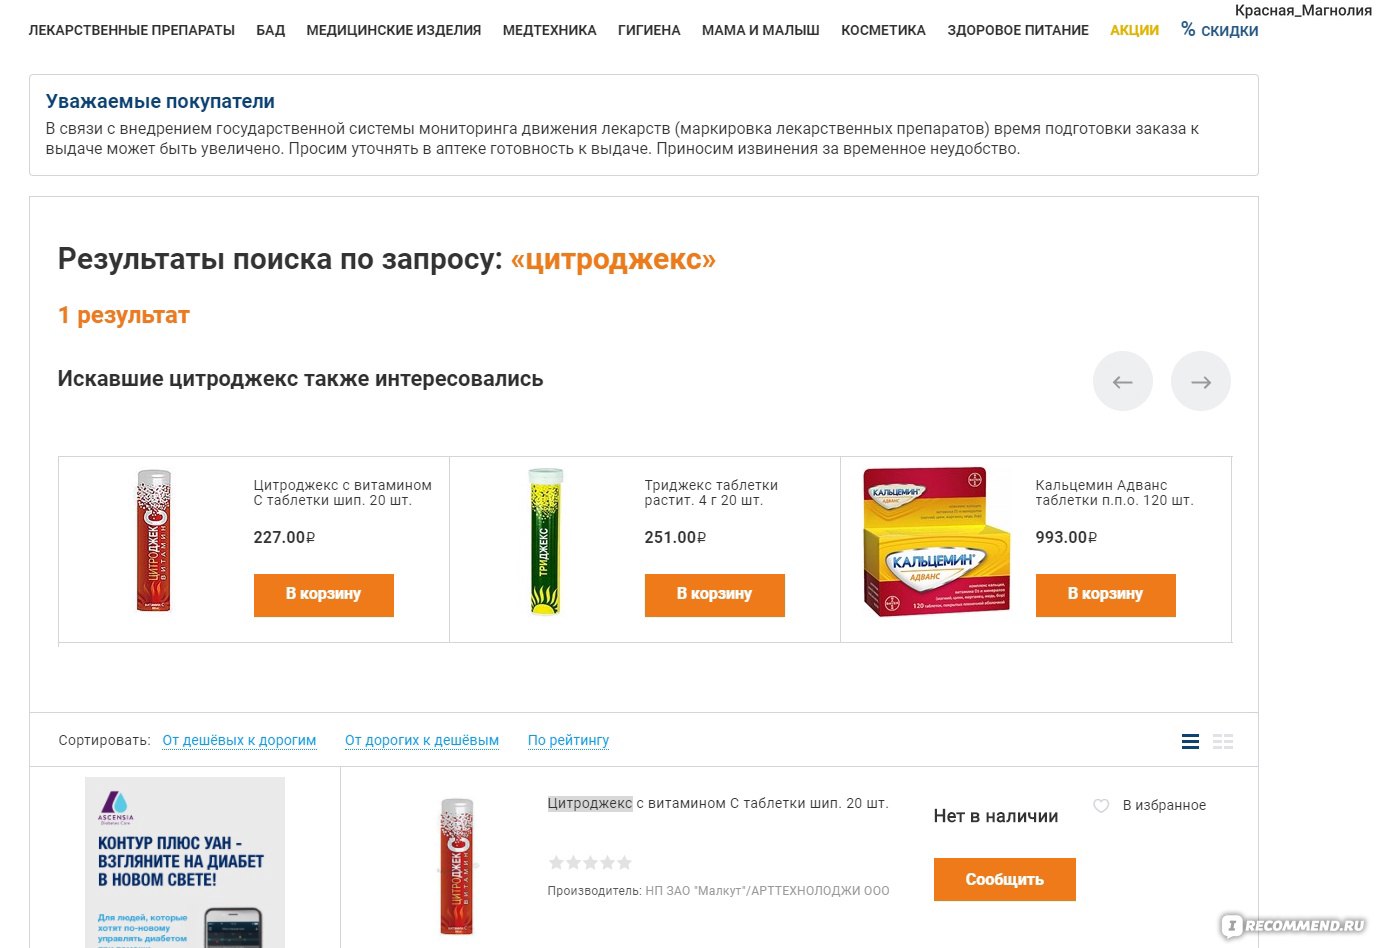 Здравсити каталог лекарств. Сайты для заказа лекарств в аптеку. На каком сайте можно заказать лекарства. Поиск лекарств в аптеках Санкт-Петербурга. Найти лекарство в аптеках Санкт-Петербурга.